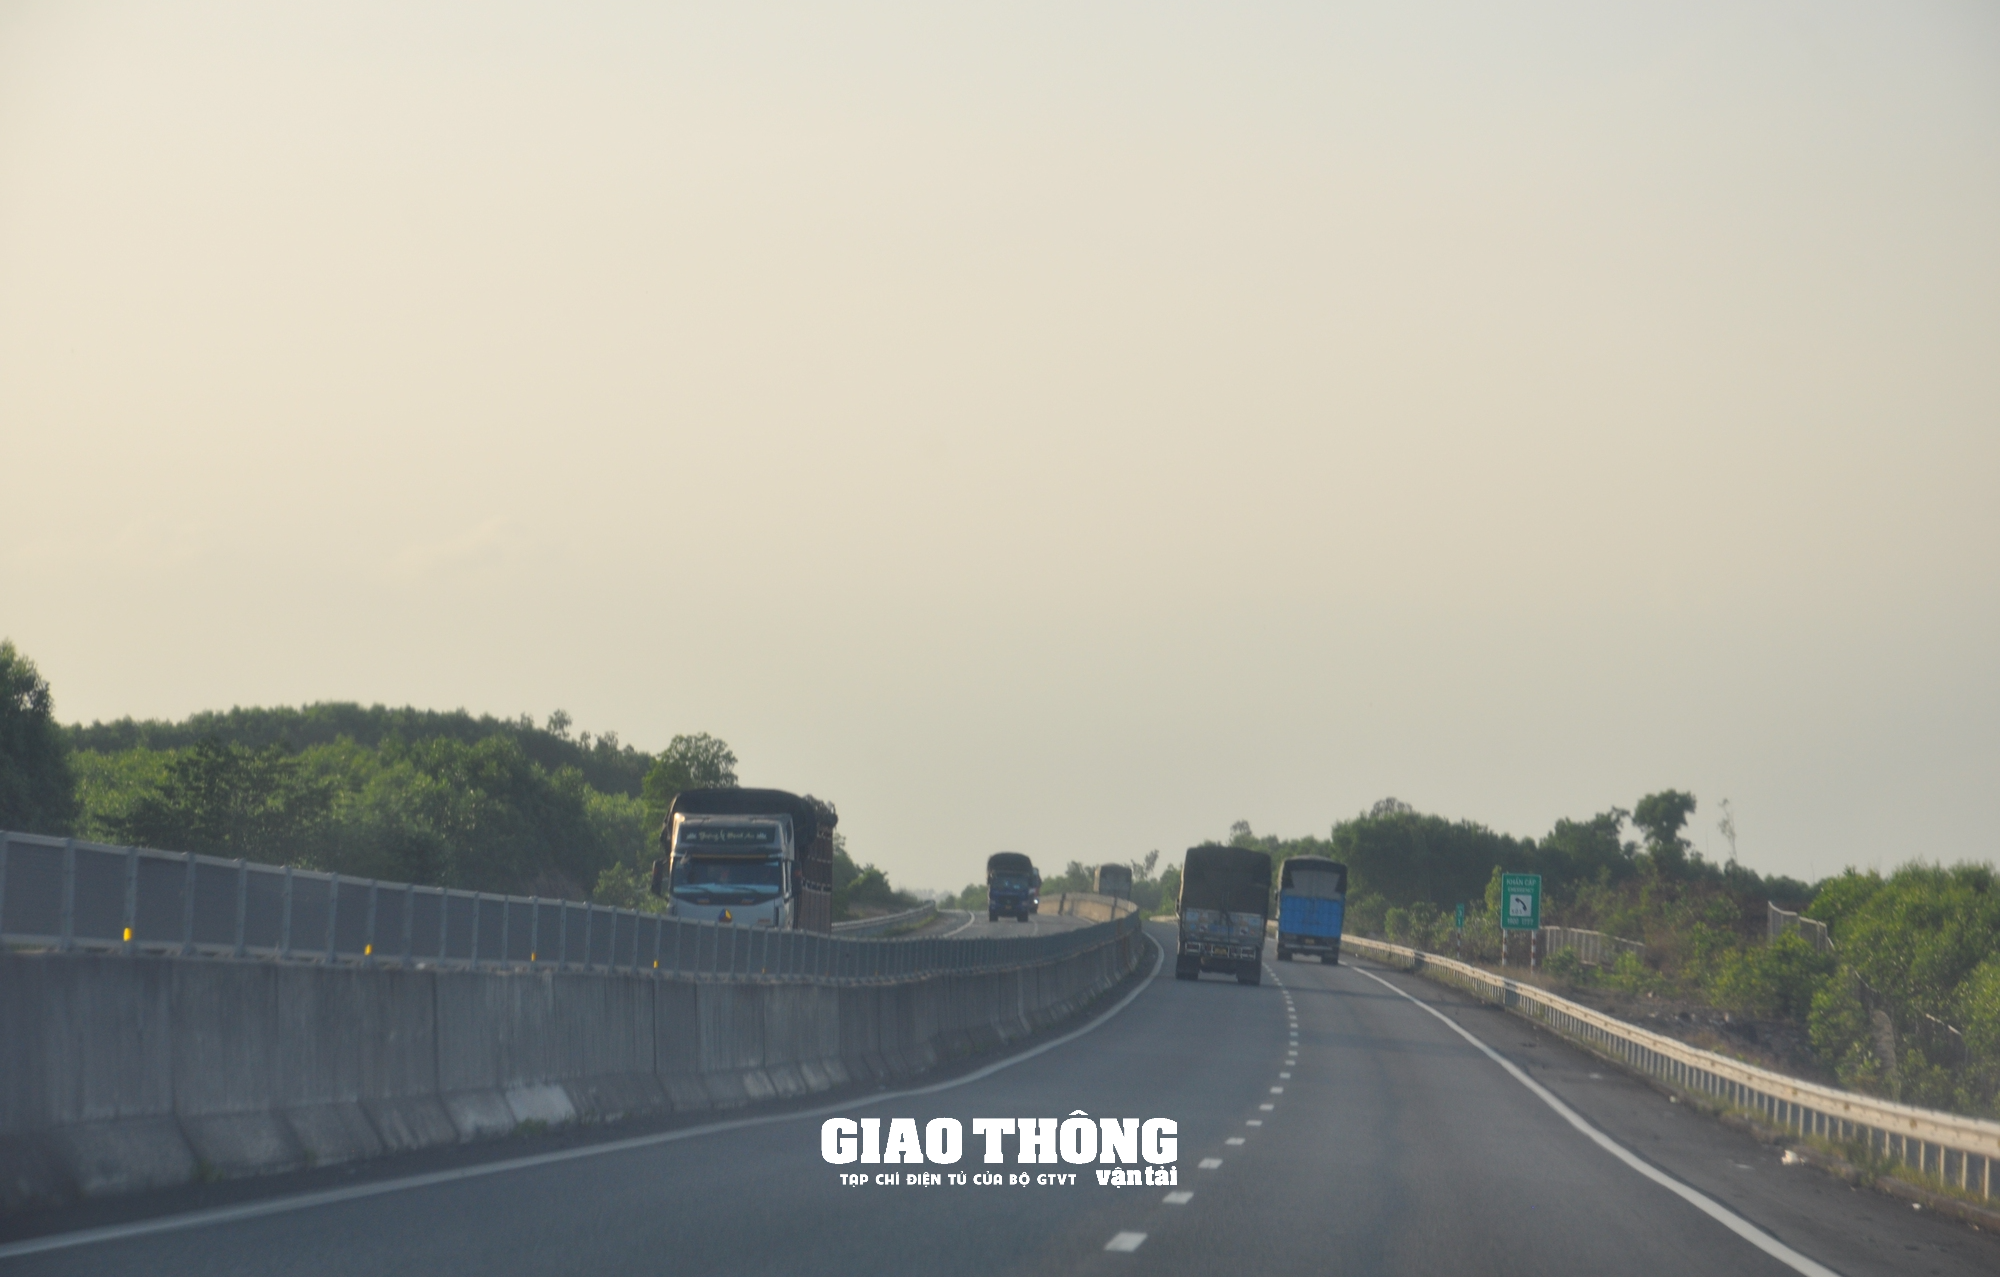 Khắc phục hư hỏng, đảm bảo ATGT tuyến cao tốc Đà Nẵng-Quảng Ngãi - Ảnh 3.